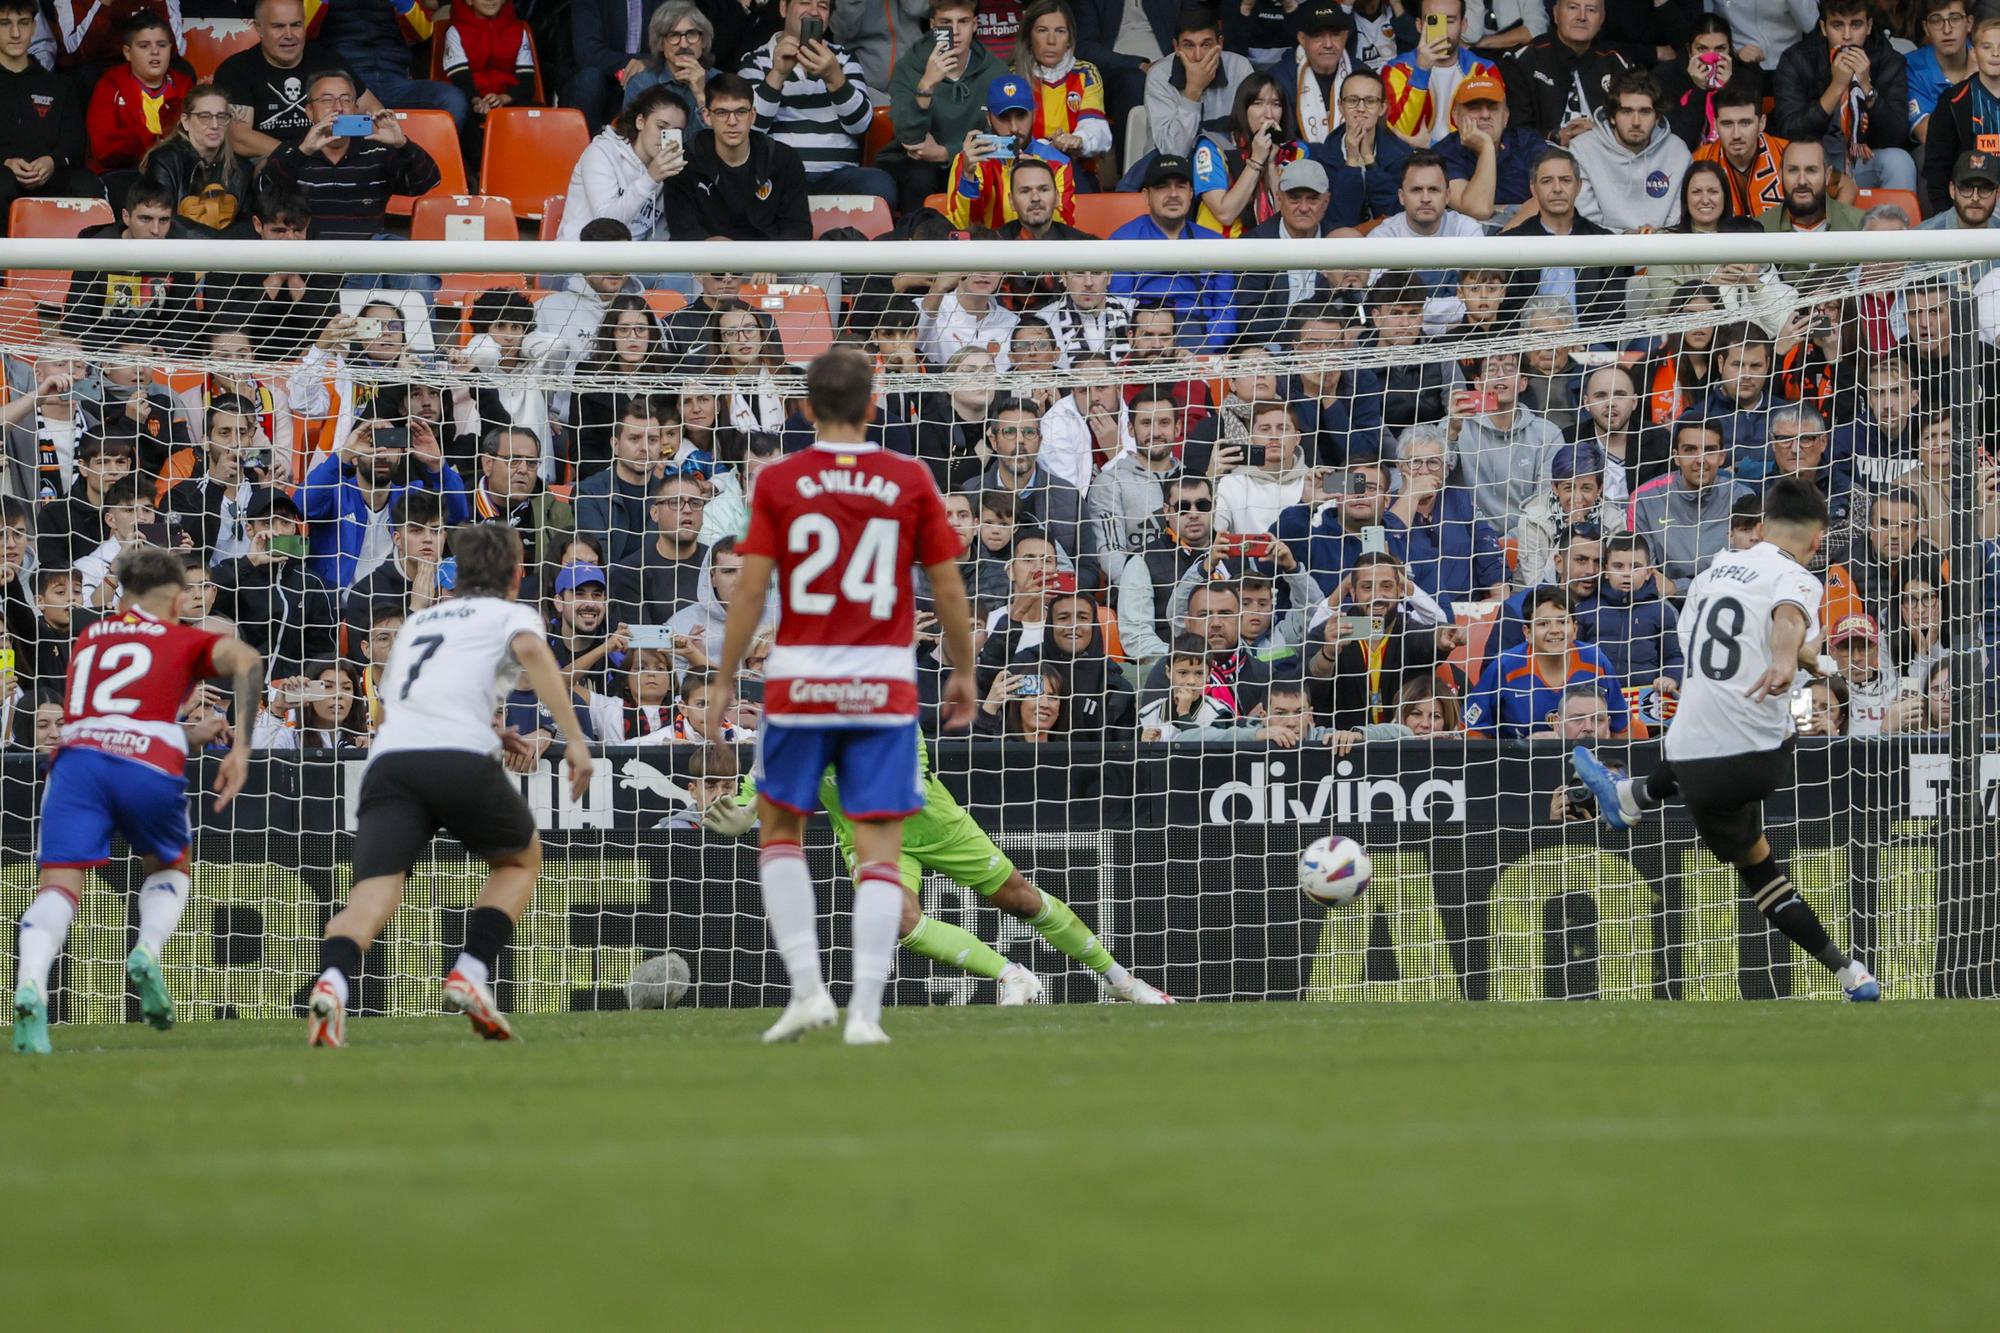 1-0. Pepelu doma a un rudo Granada desde el penalti